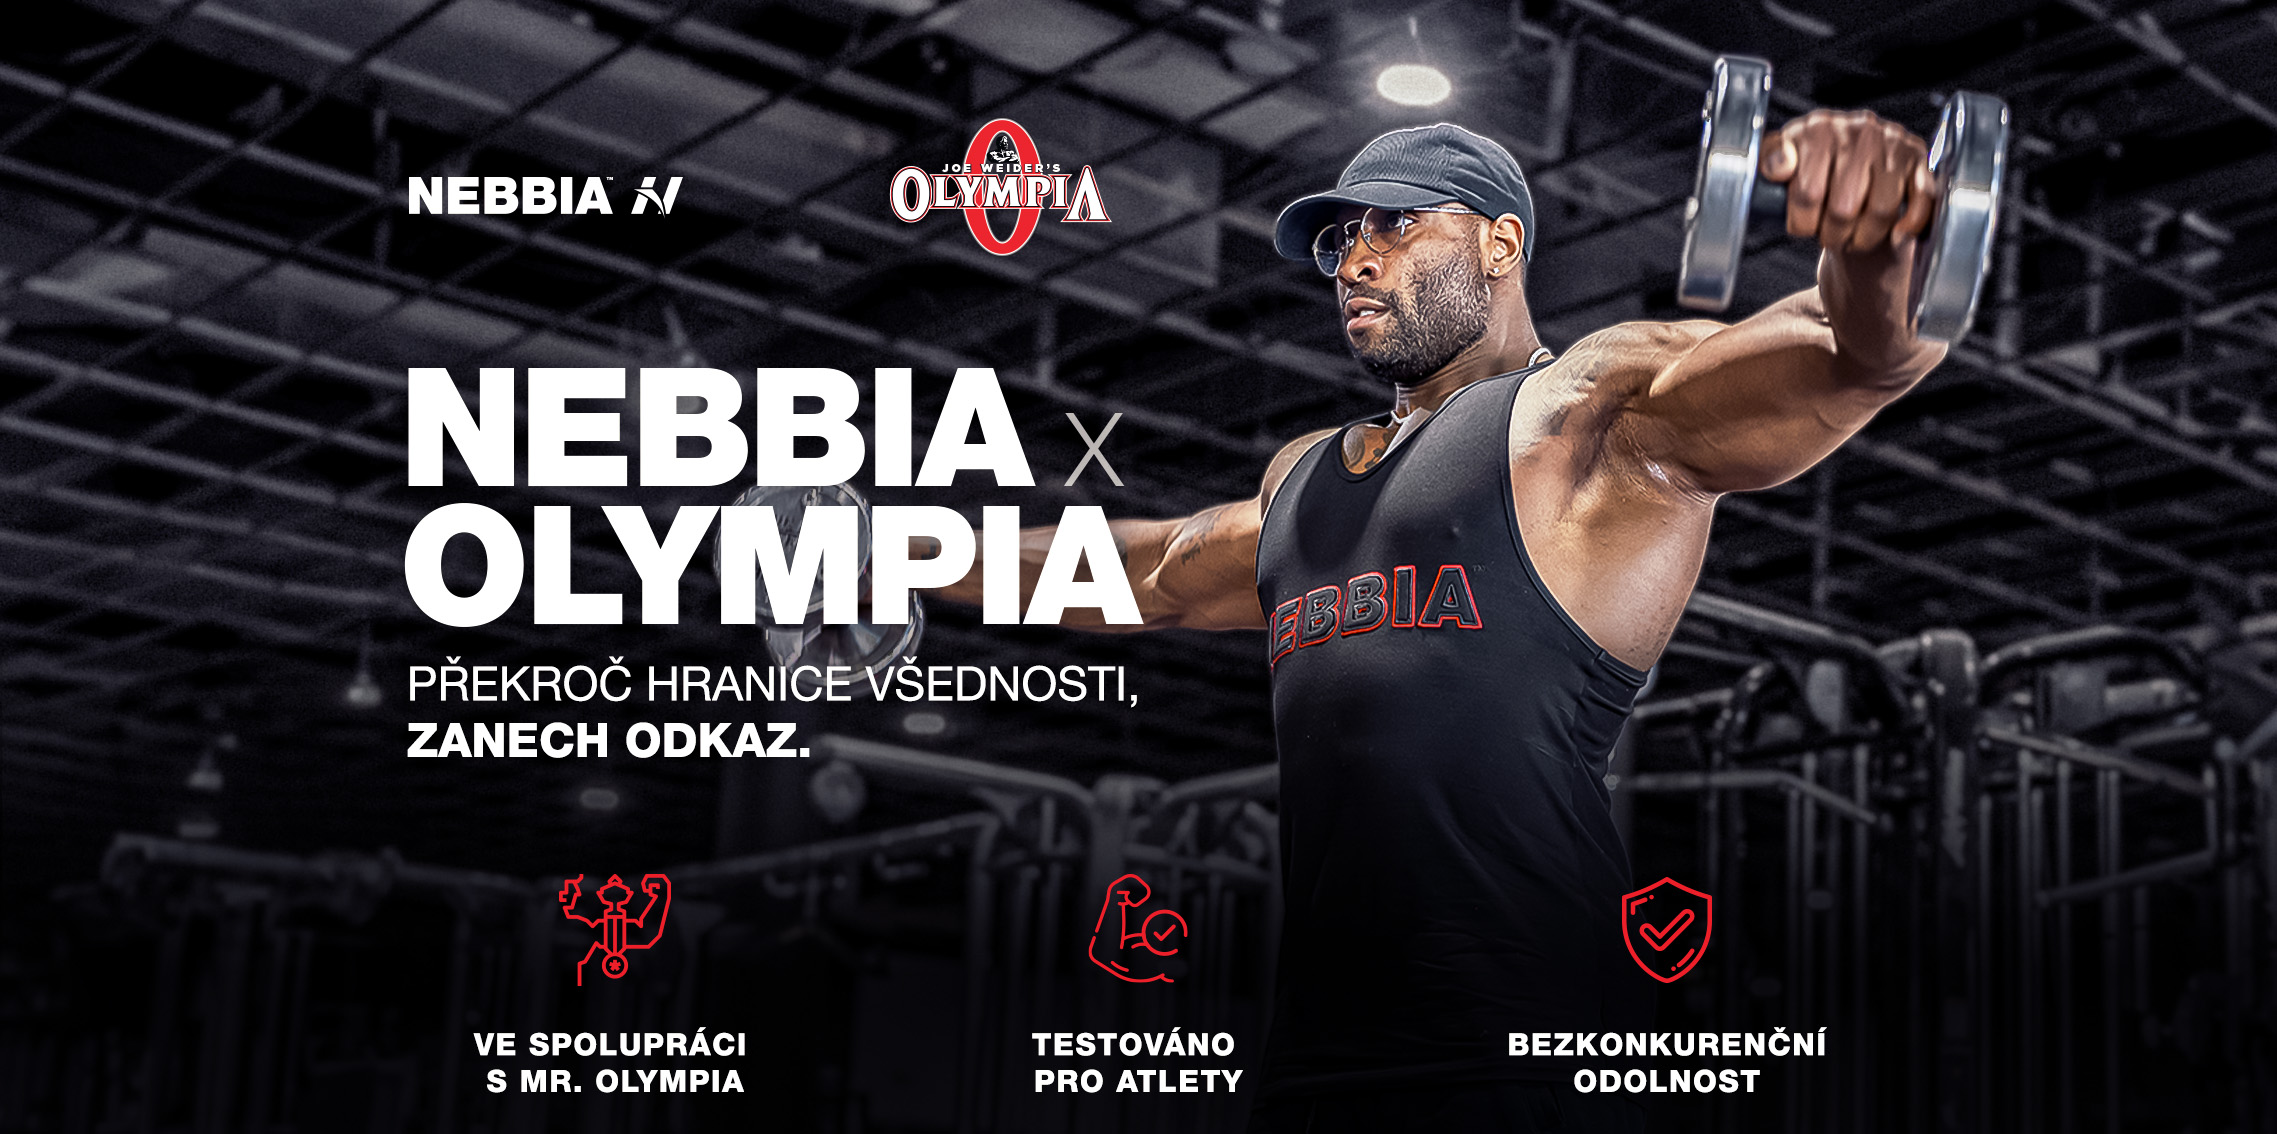 NEBBIA Fitness a bodybuilding oblečení pro muže Nová pánská kolekce NEBBIA x OLYMPIA